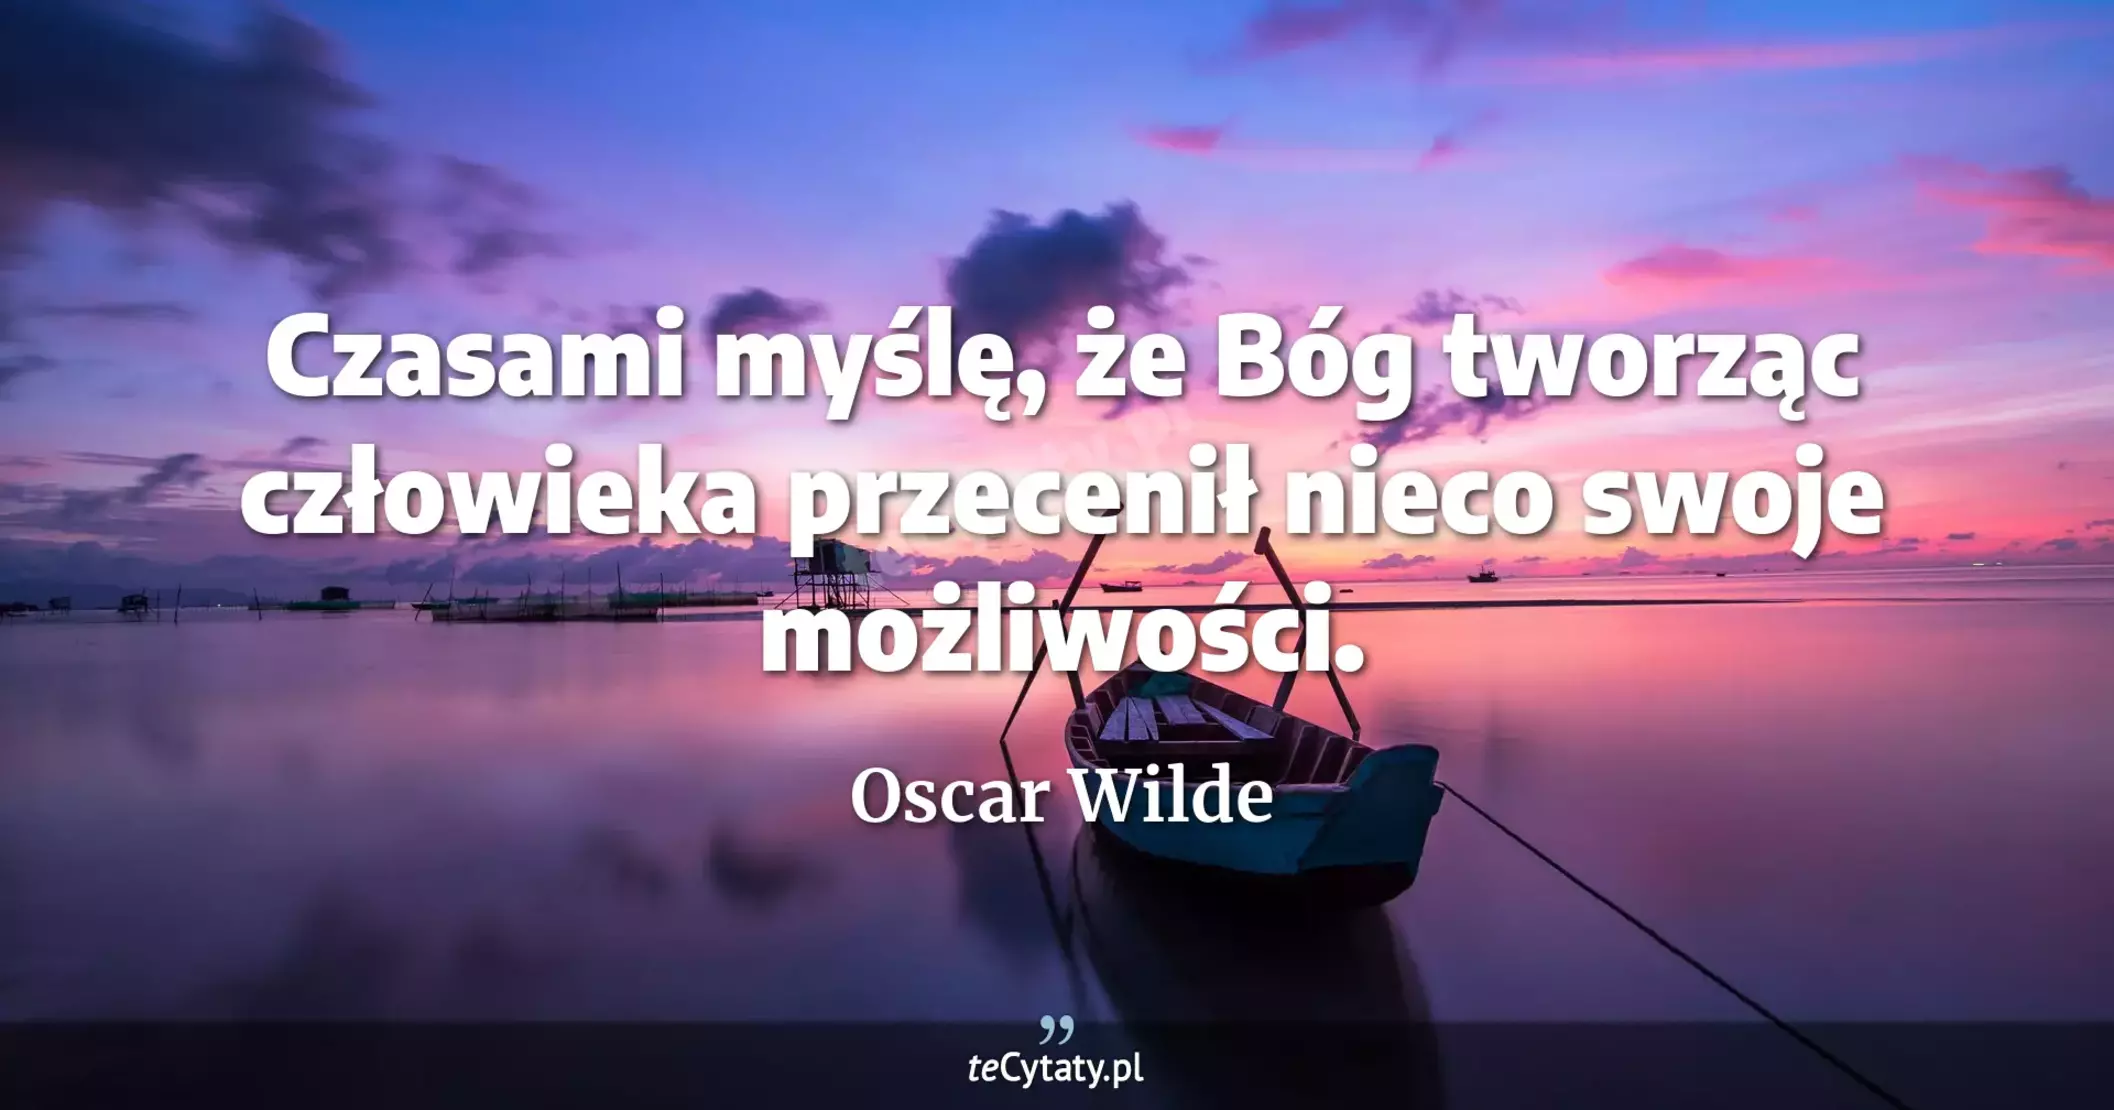 Czasami myślę, że Bóg tworząc człowieka przecenił nieco swoje możliwości. - Oscar Wilde